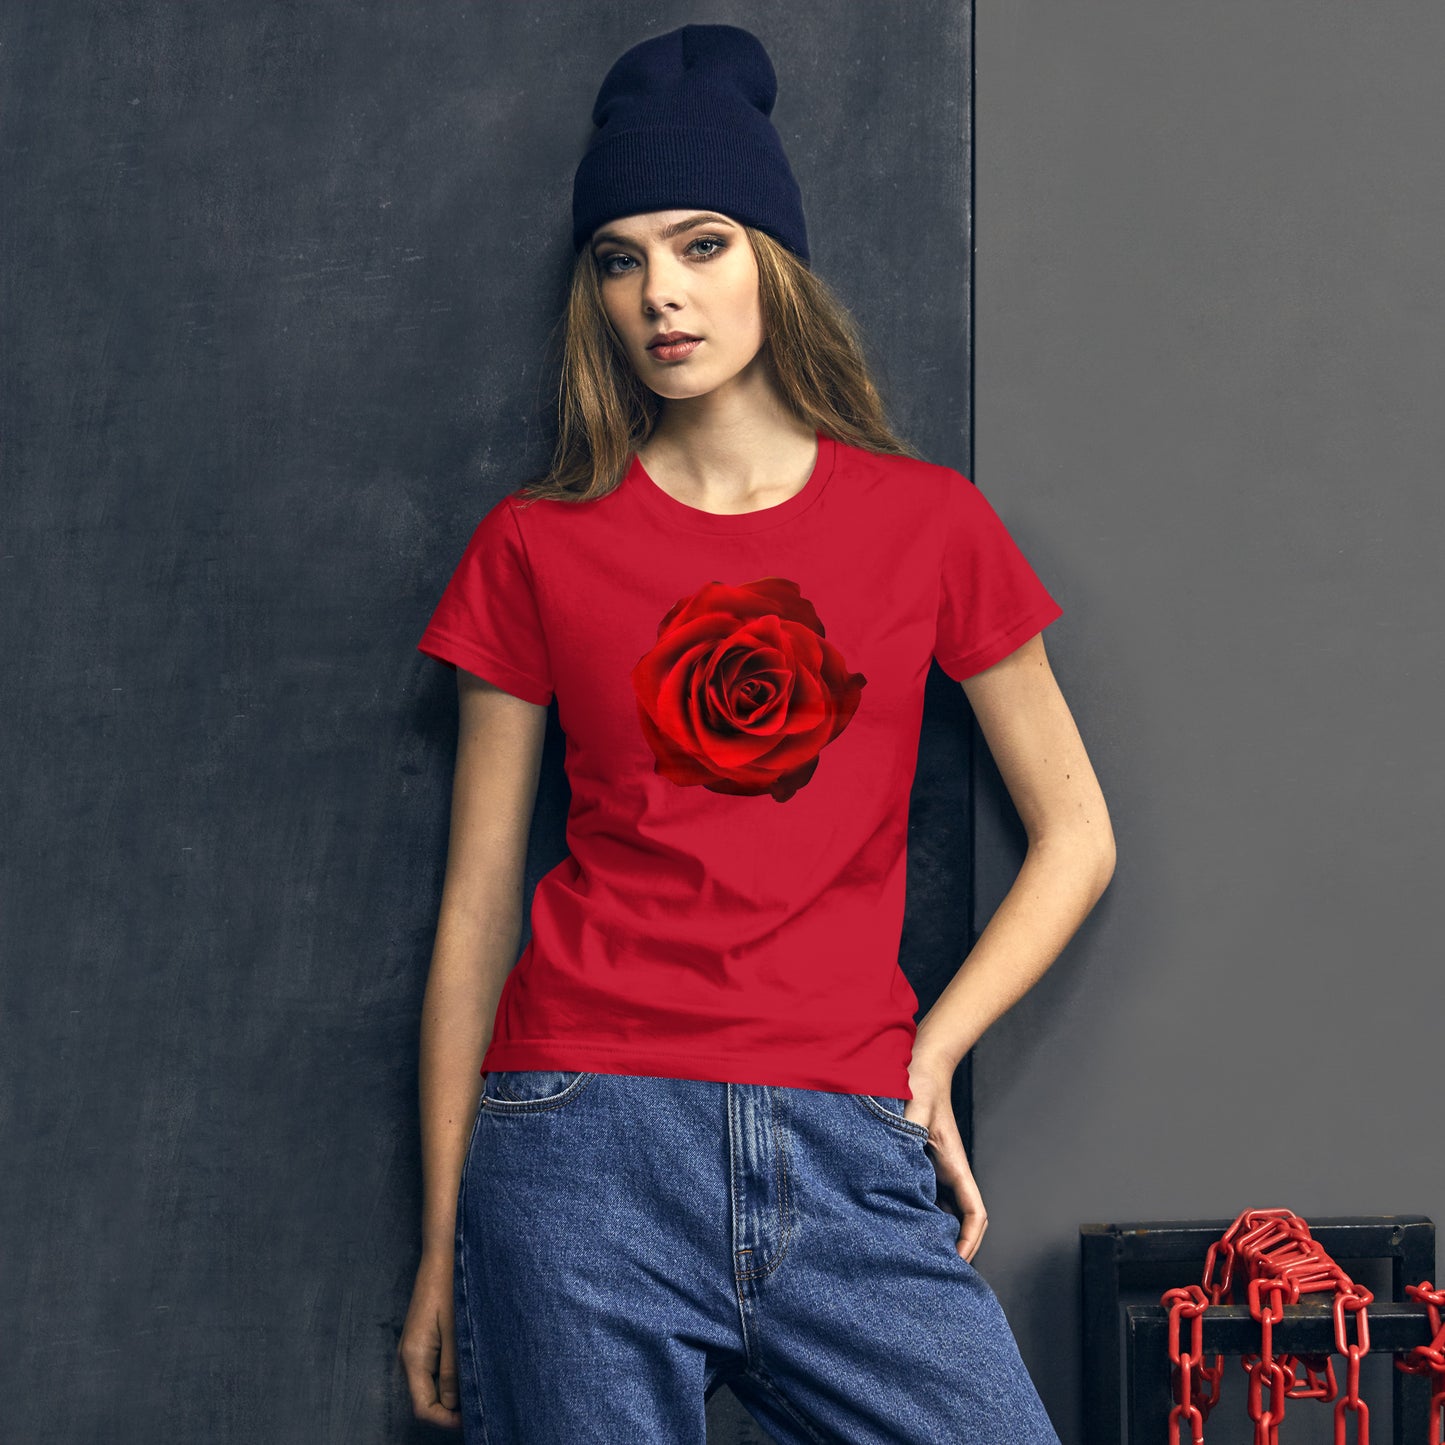 Vibrant Rose Fashion Fit T-Shirt